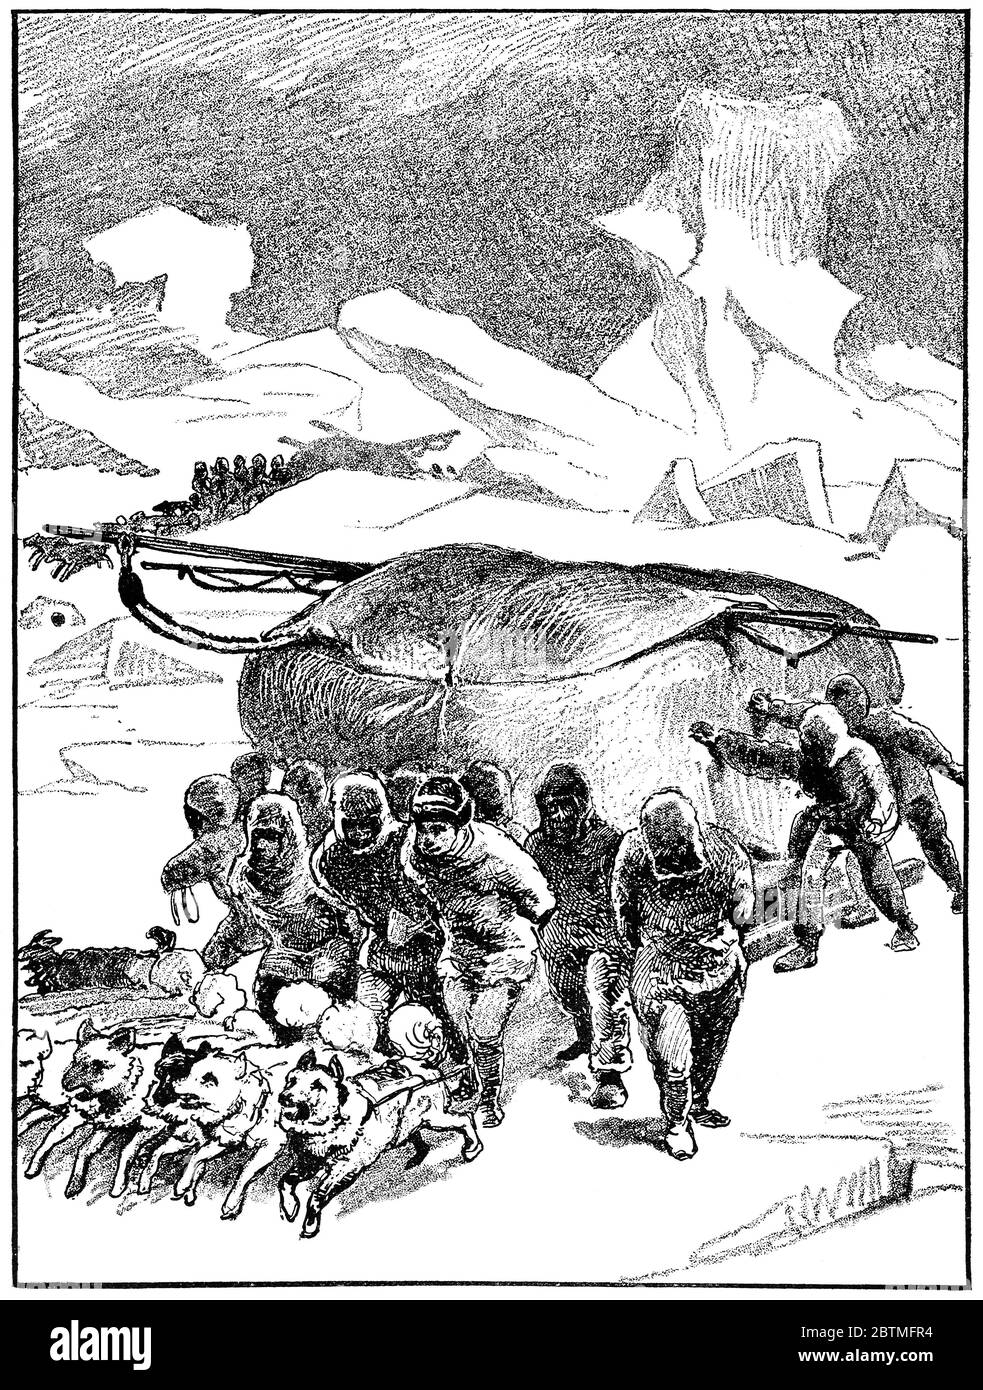 Schlittenexpeditionen von William Parry. Illustration des 19. Jahrhunderts. Weißer Hintergrund. Stockfoto